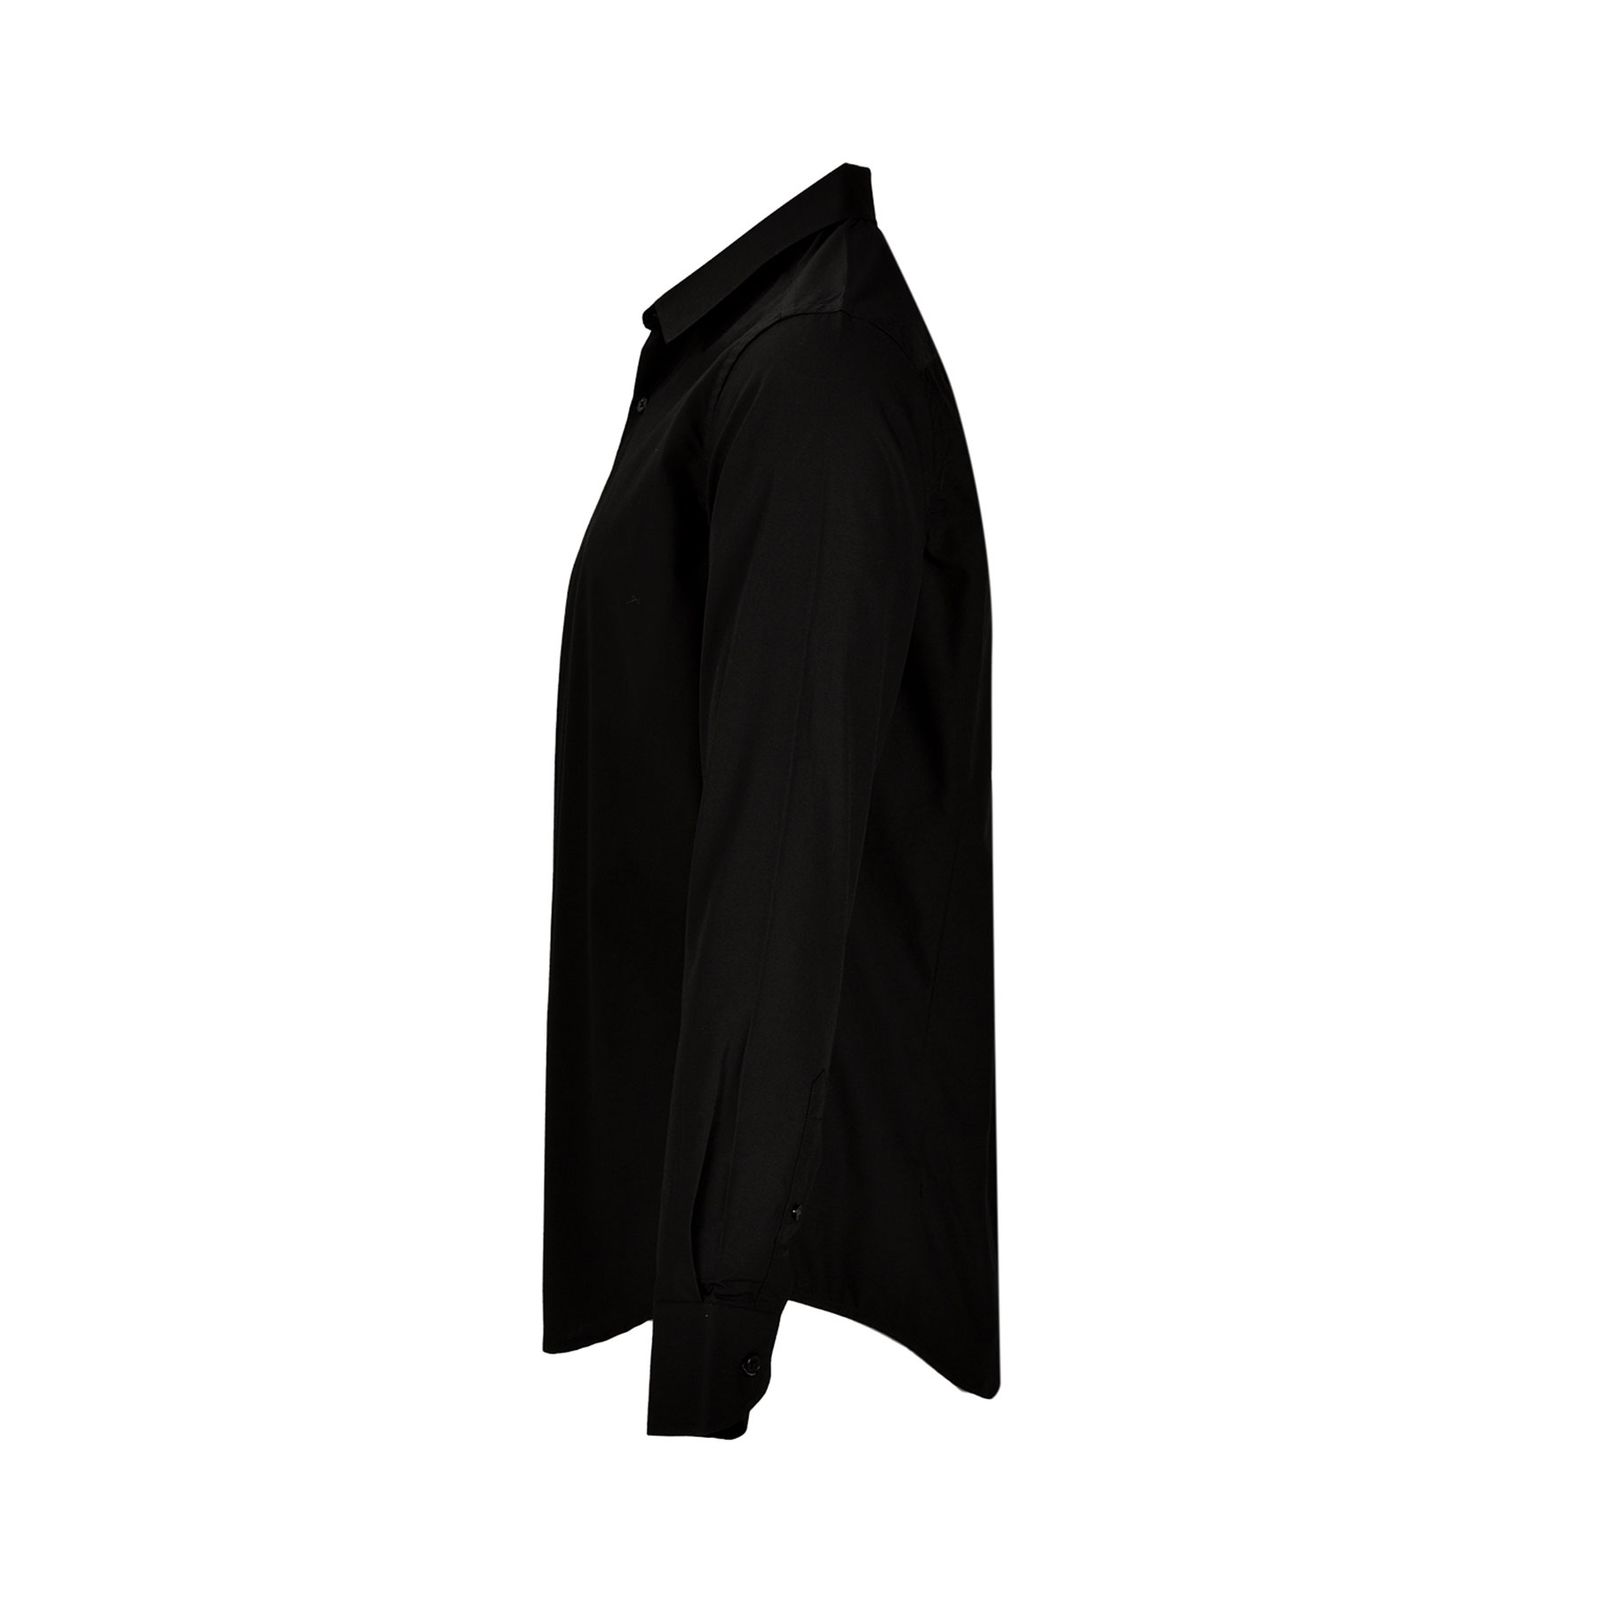 پیراهن آستین بلند مردانه بادی اسپینر مدل 3773 کد 1 رنگ مشکی -  - 2